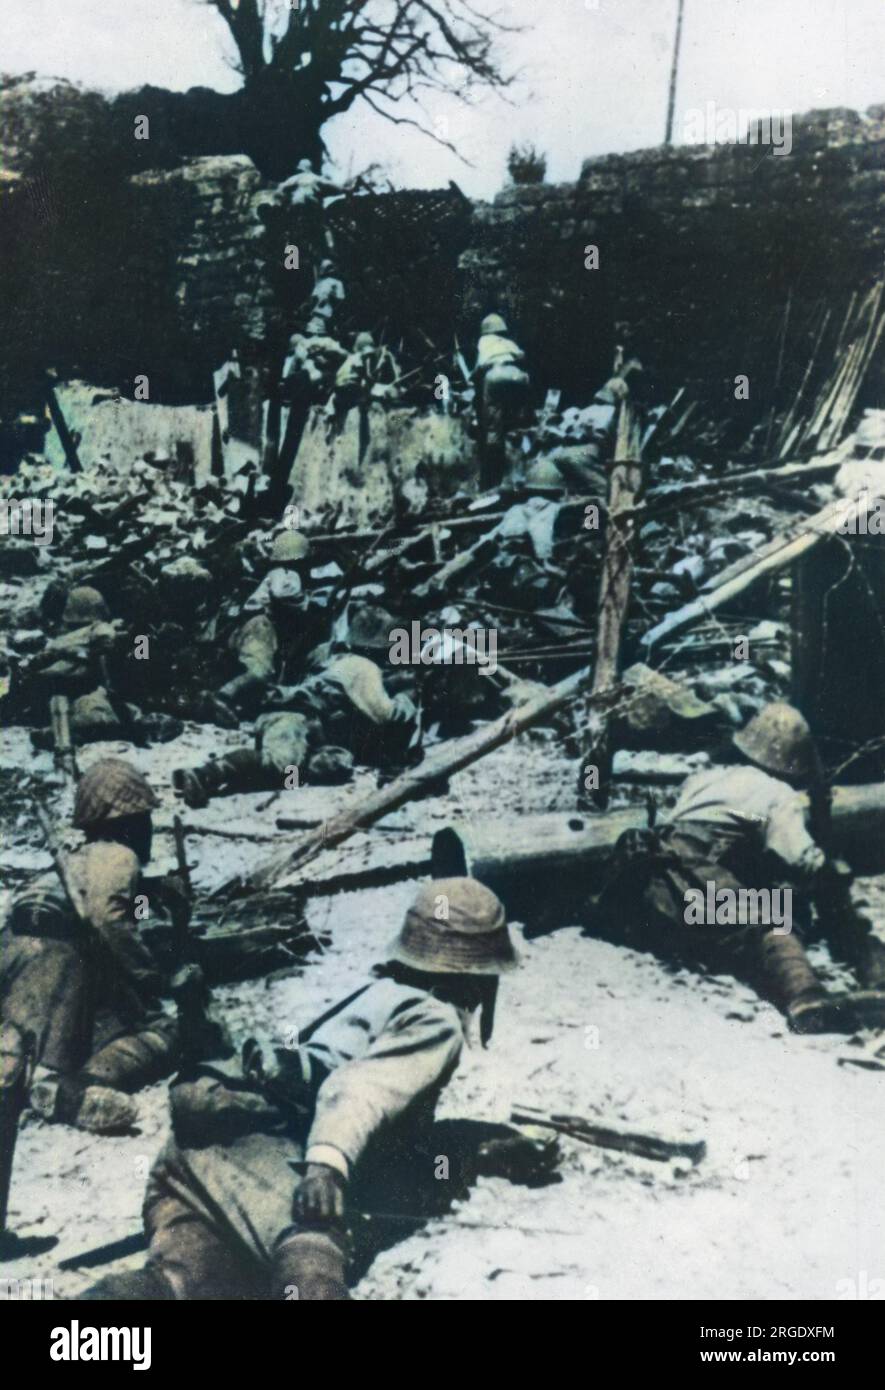 Während des Zweiten Chino-Japanischen Krieges starten japanische Truppen einen Angriff auf Chungking (Chongqing). Seit Ende 1938 wurde Chungking die Basis und provisorische Hauptstadt von Chiang Kai-Sheks KMT. Trotz zahlreicher Bombardierungen und Versuchen, die Stadt zu erobern, blieb sie bis zum Ende des Krieges standhaft. Stockfoto